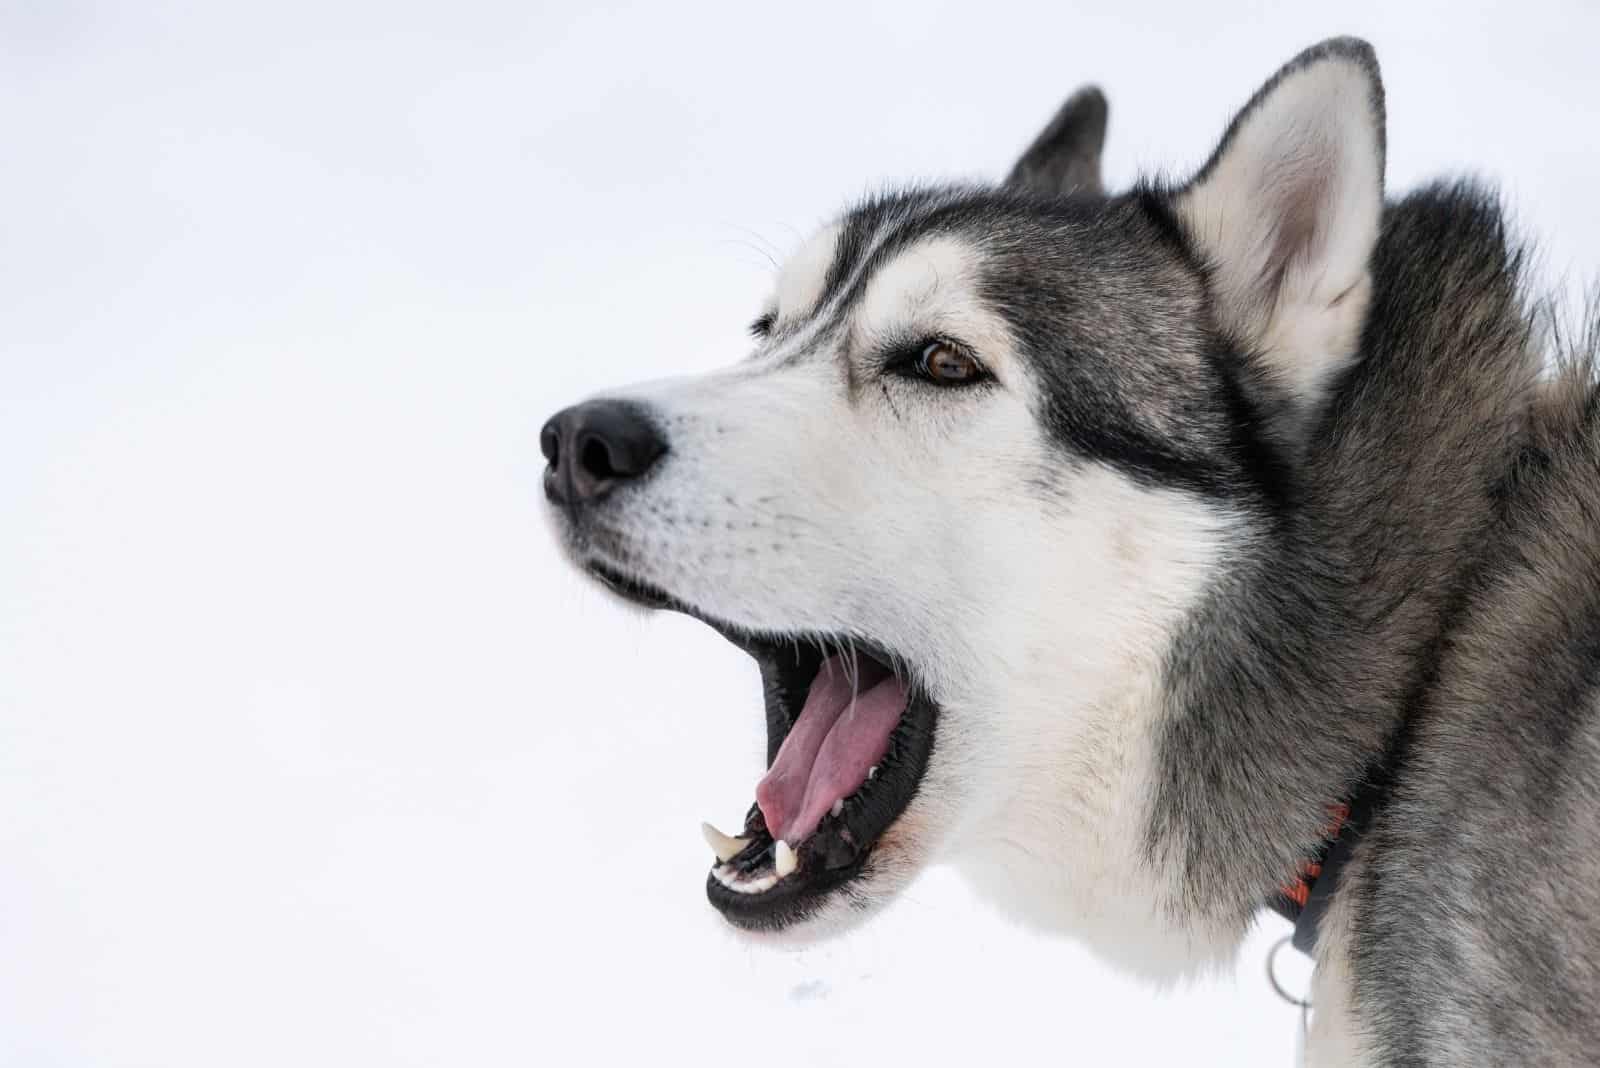 Husky dog barking portrait with winter snowy background